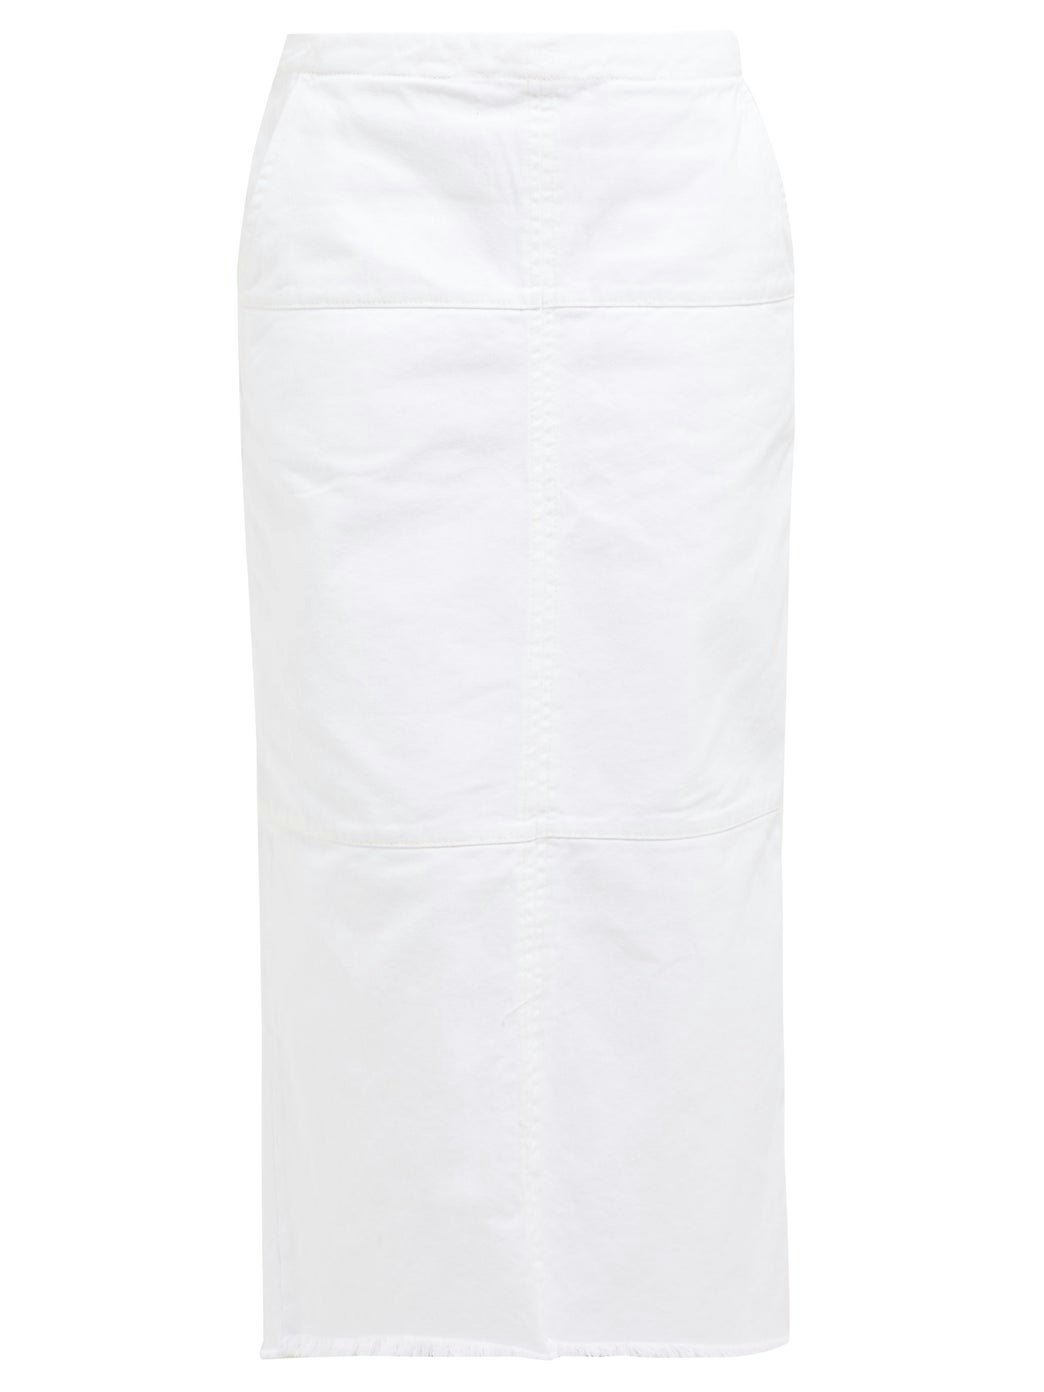 white denim skirt midi length